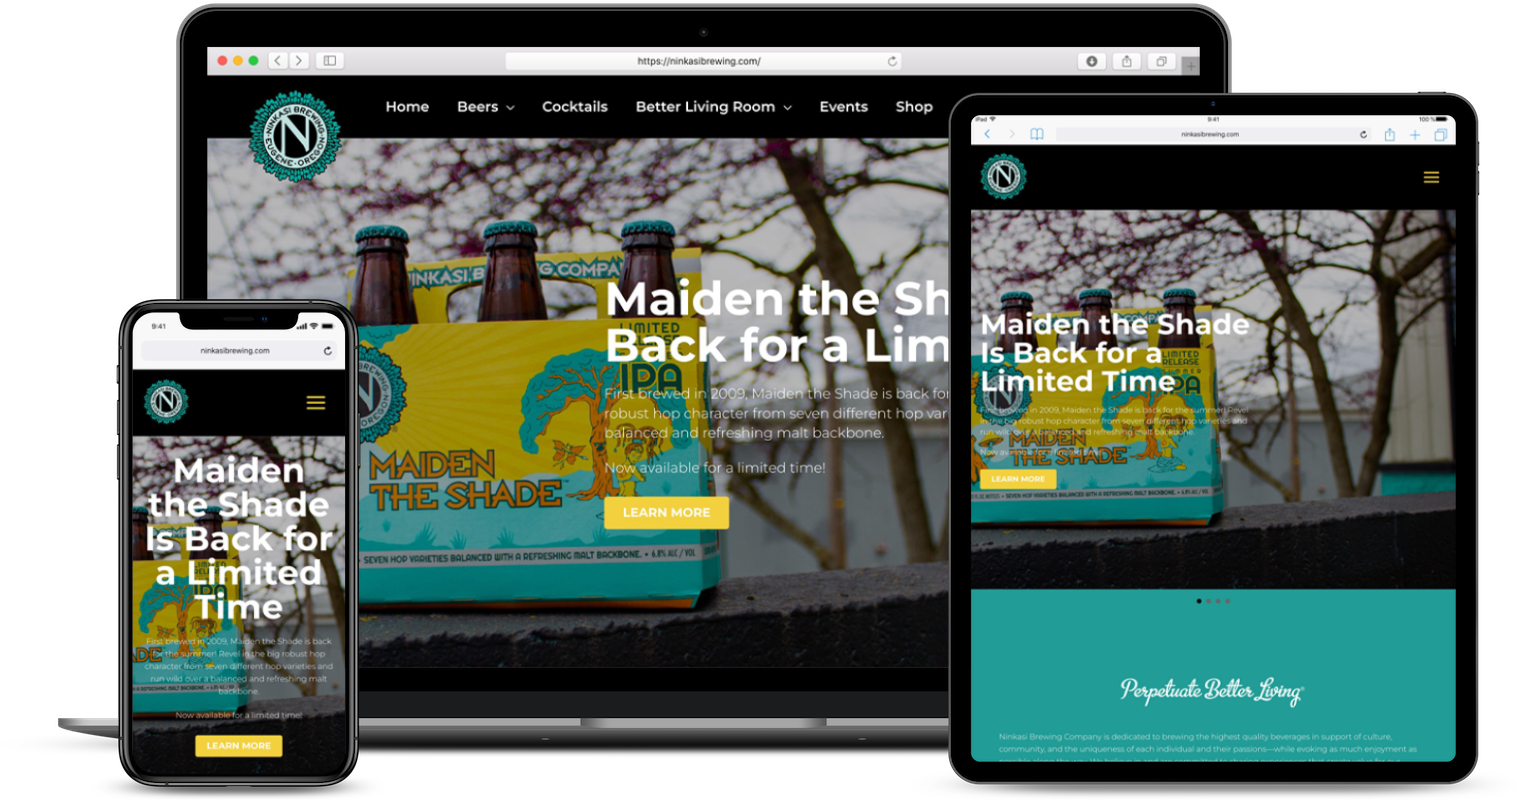 ninkasi brewing website redesign